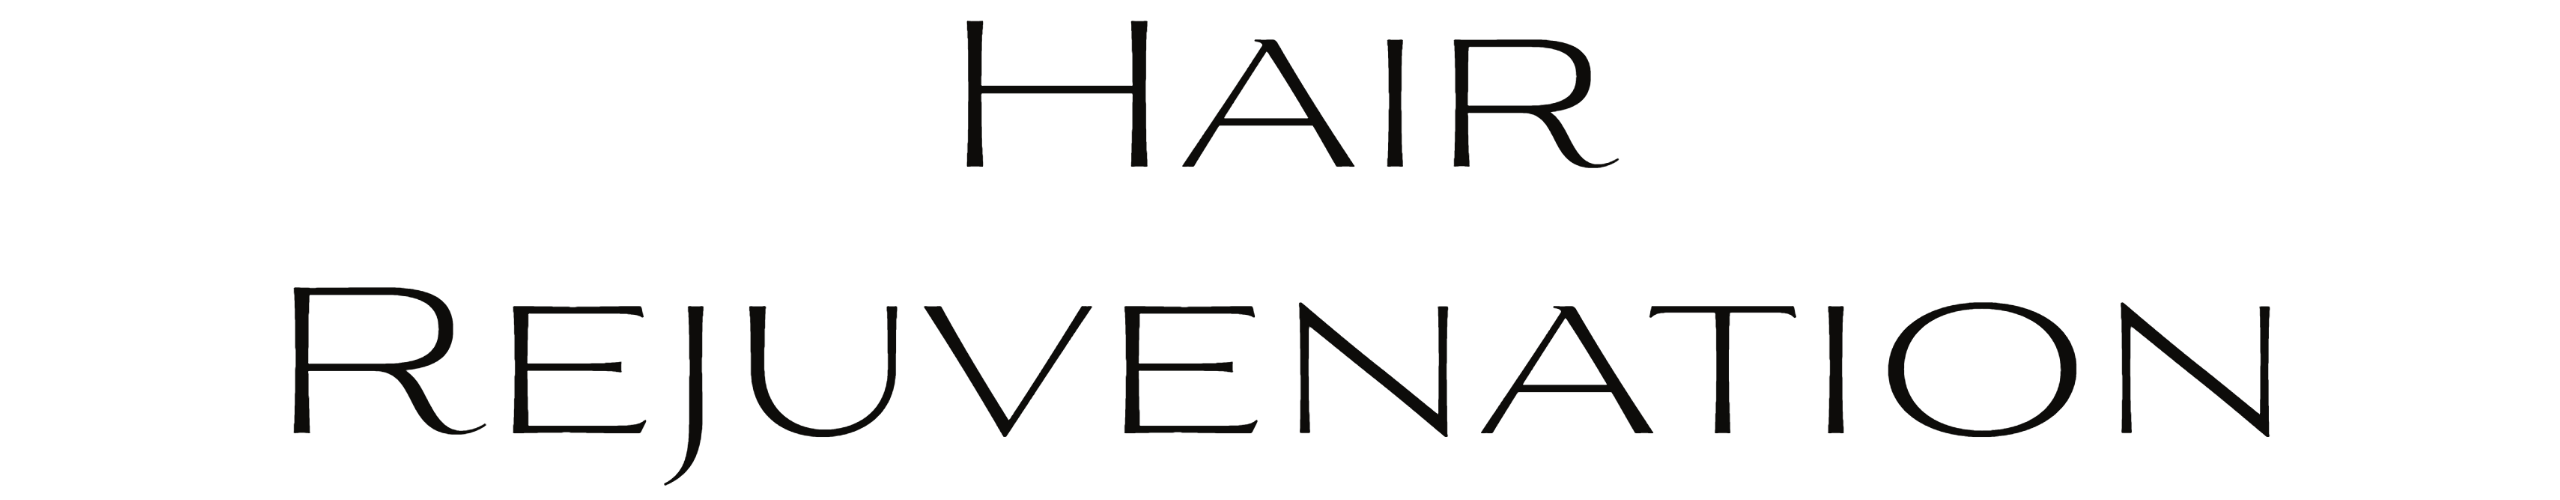 hair rejuvenation